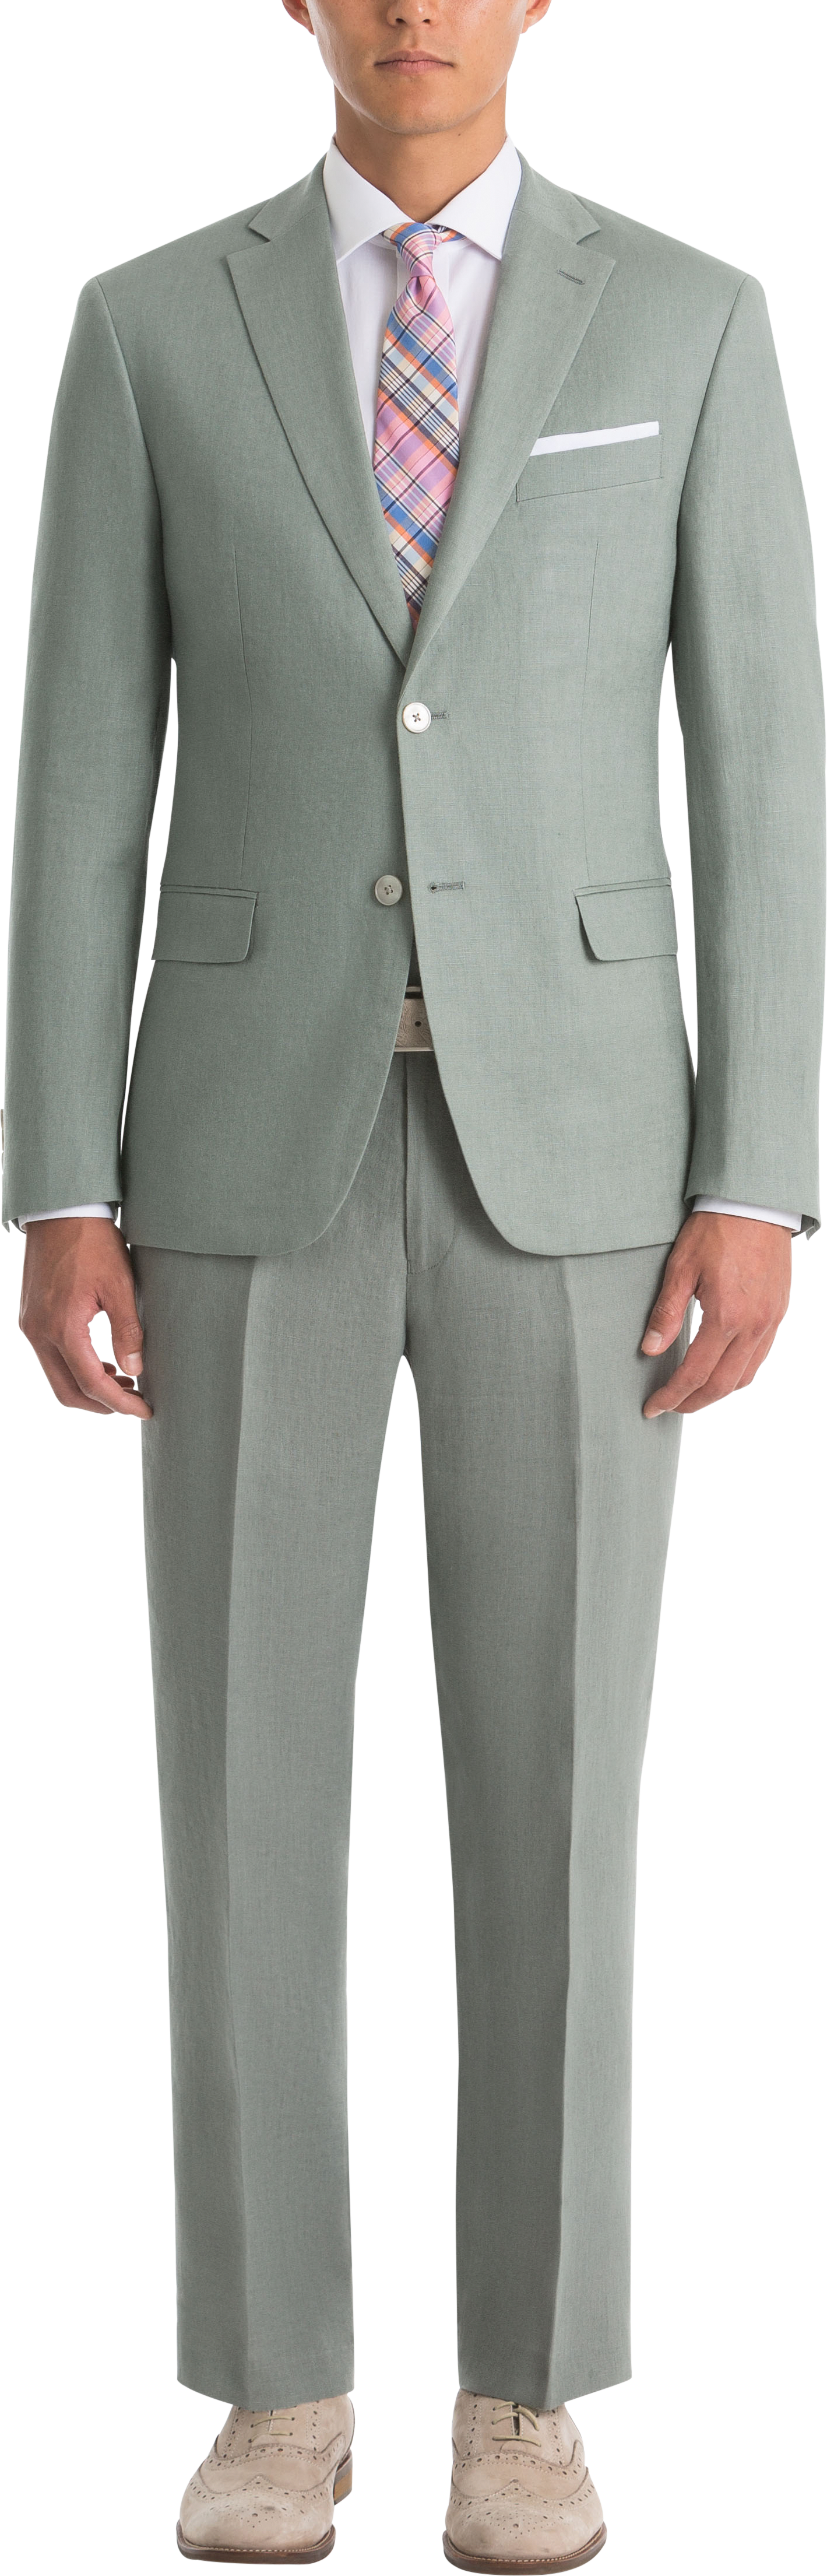 Lauren By Ralph Lauren Sage Classic Fit Linen Suit Separates